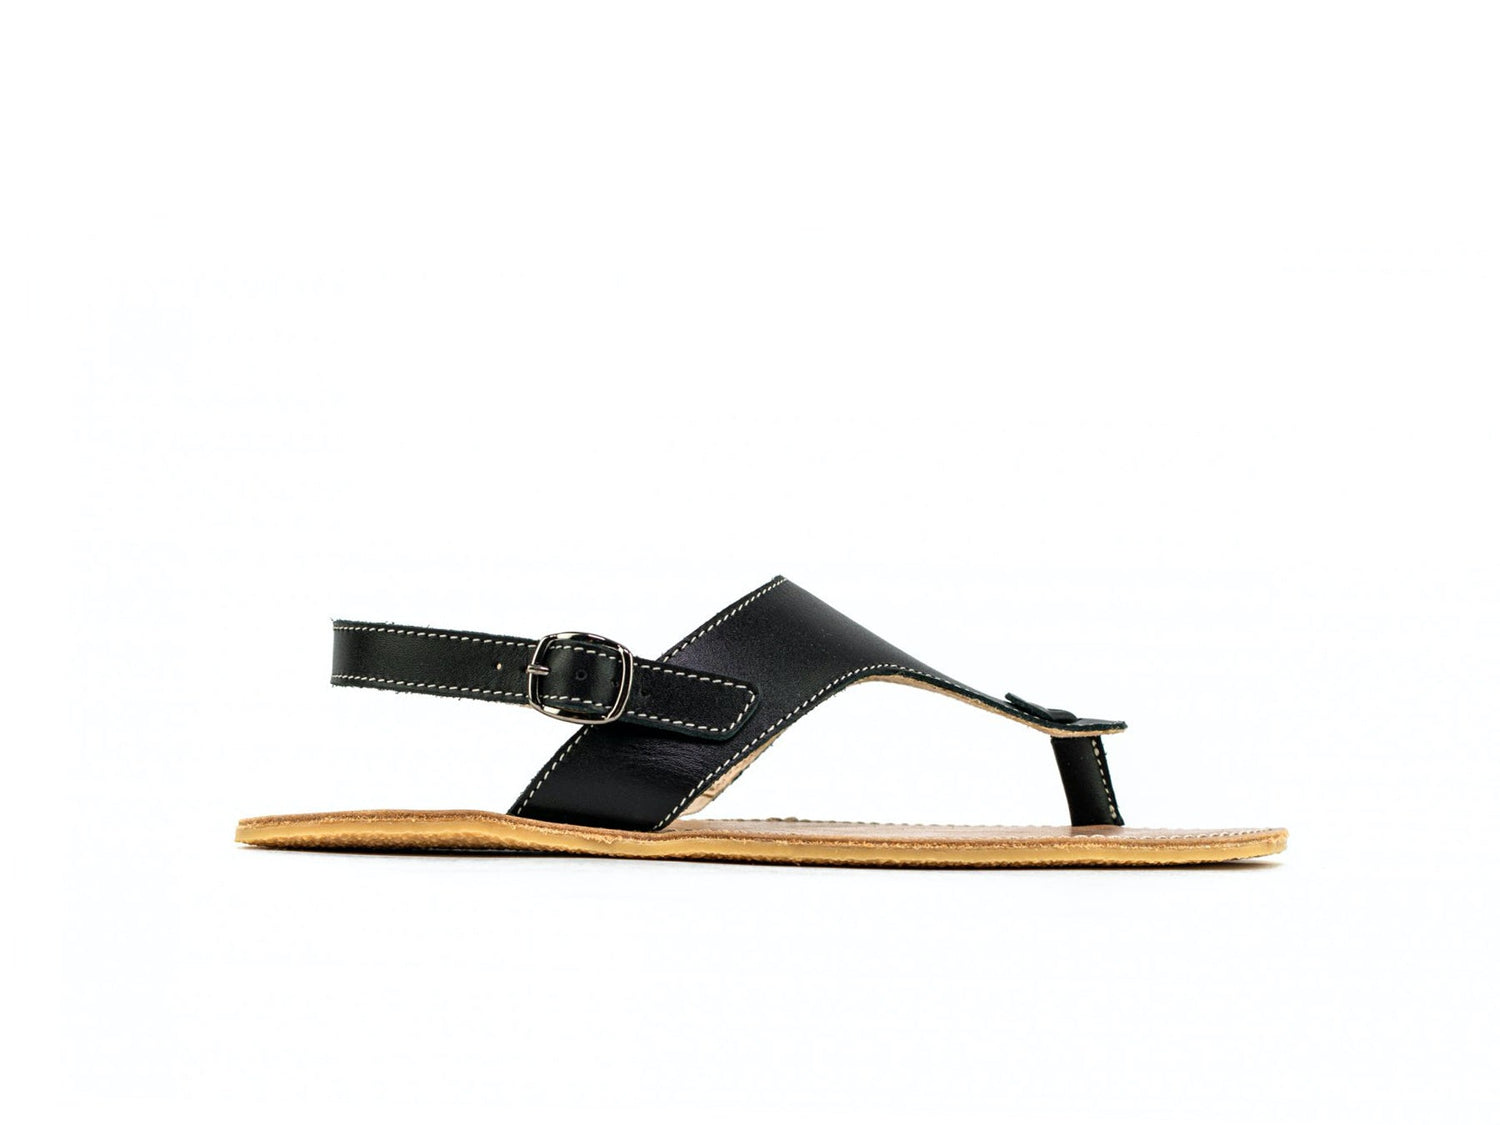 Barefoot Sandals - Be Lenka Promenade - Black-Be Lenka-Cacles Barefoot